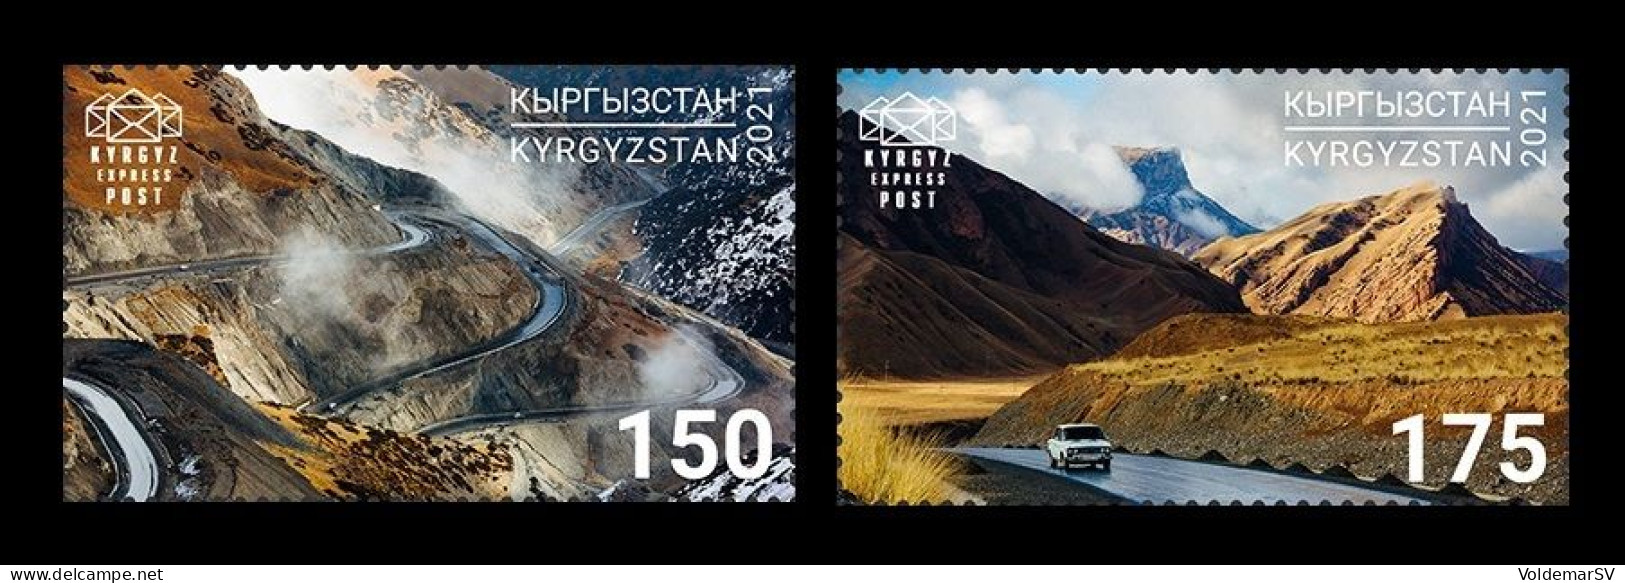 Kyrgyzstan (KEP) 2021 Mih. 181/82 Pamir Highway. Automobiles. Mountains MNH ** - Kirghizistan